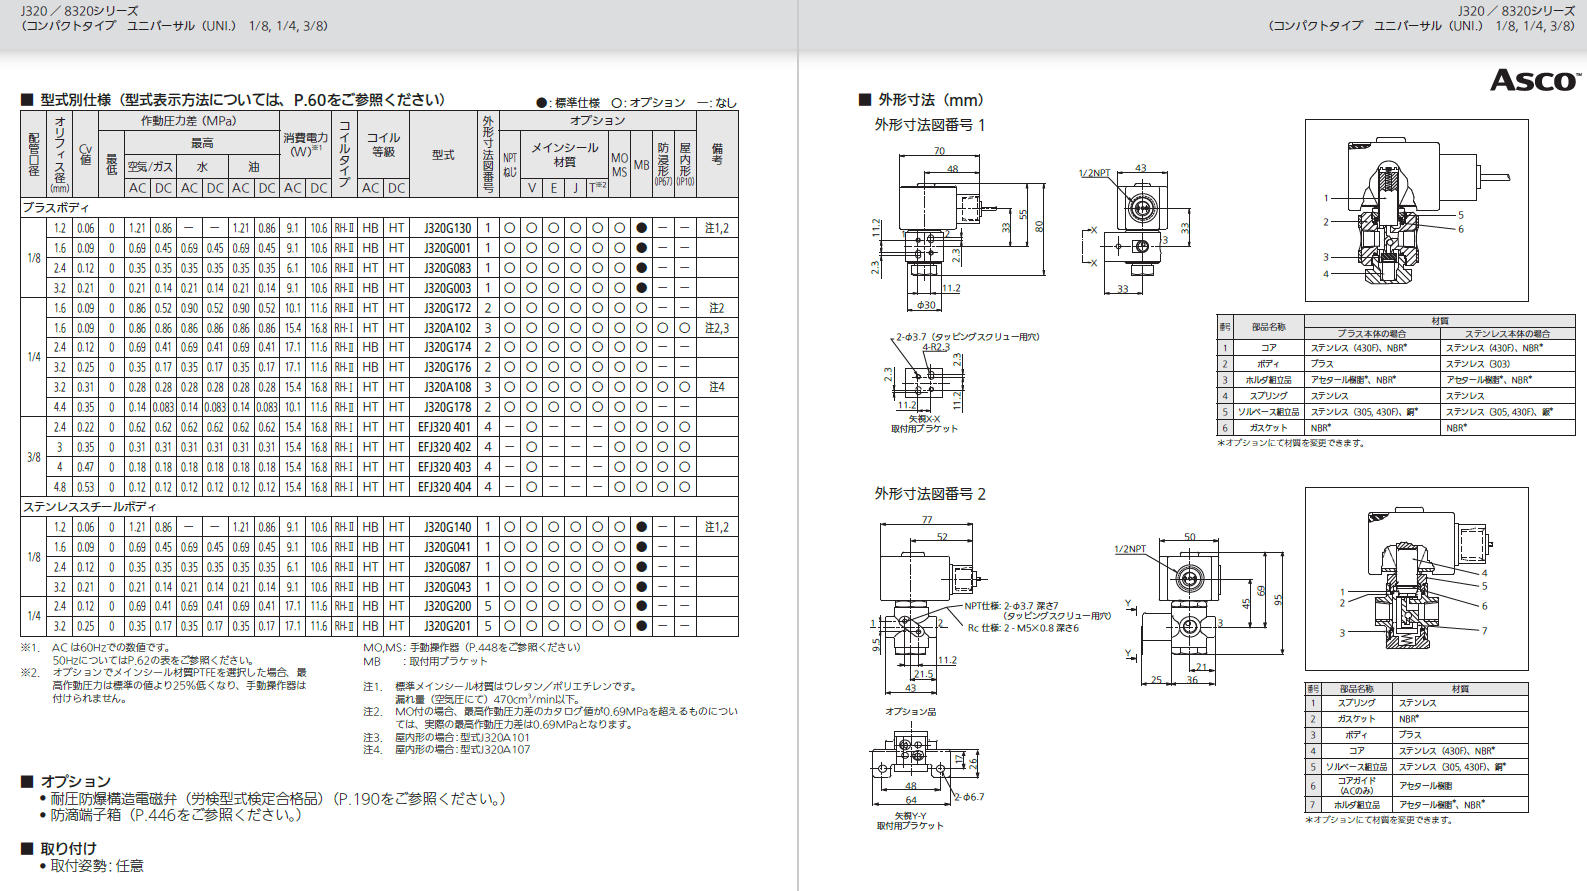 よいしな 3方向電磁弁 UNI 配管3/8 日本アスコ㈱ ASCO